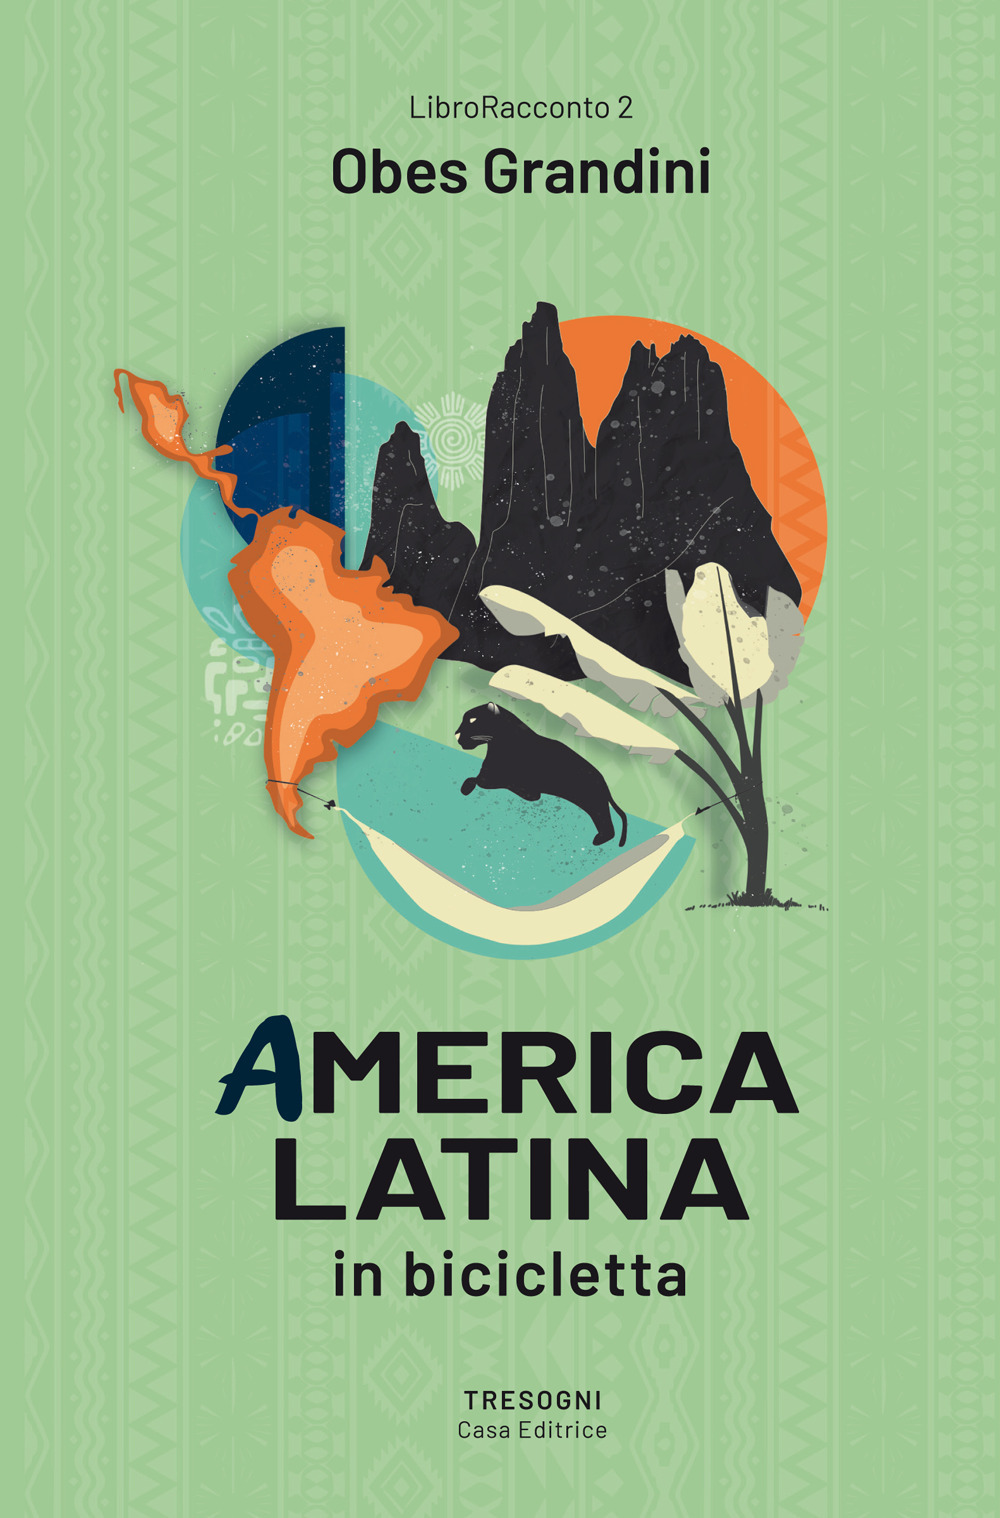 America latina. In bicicletta